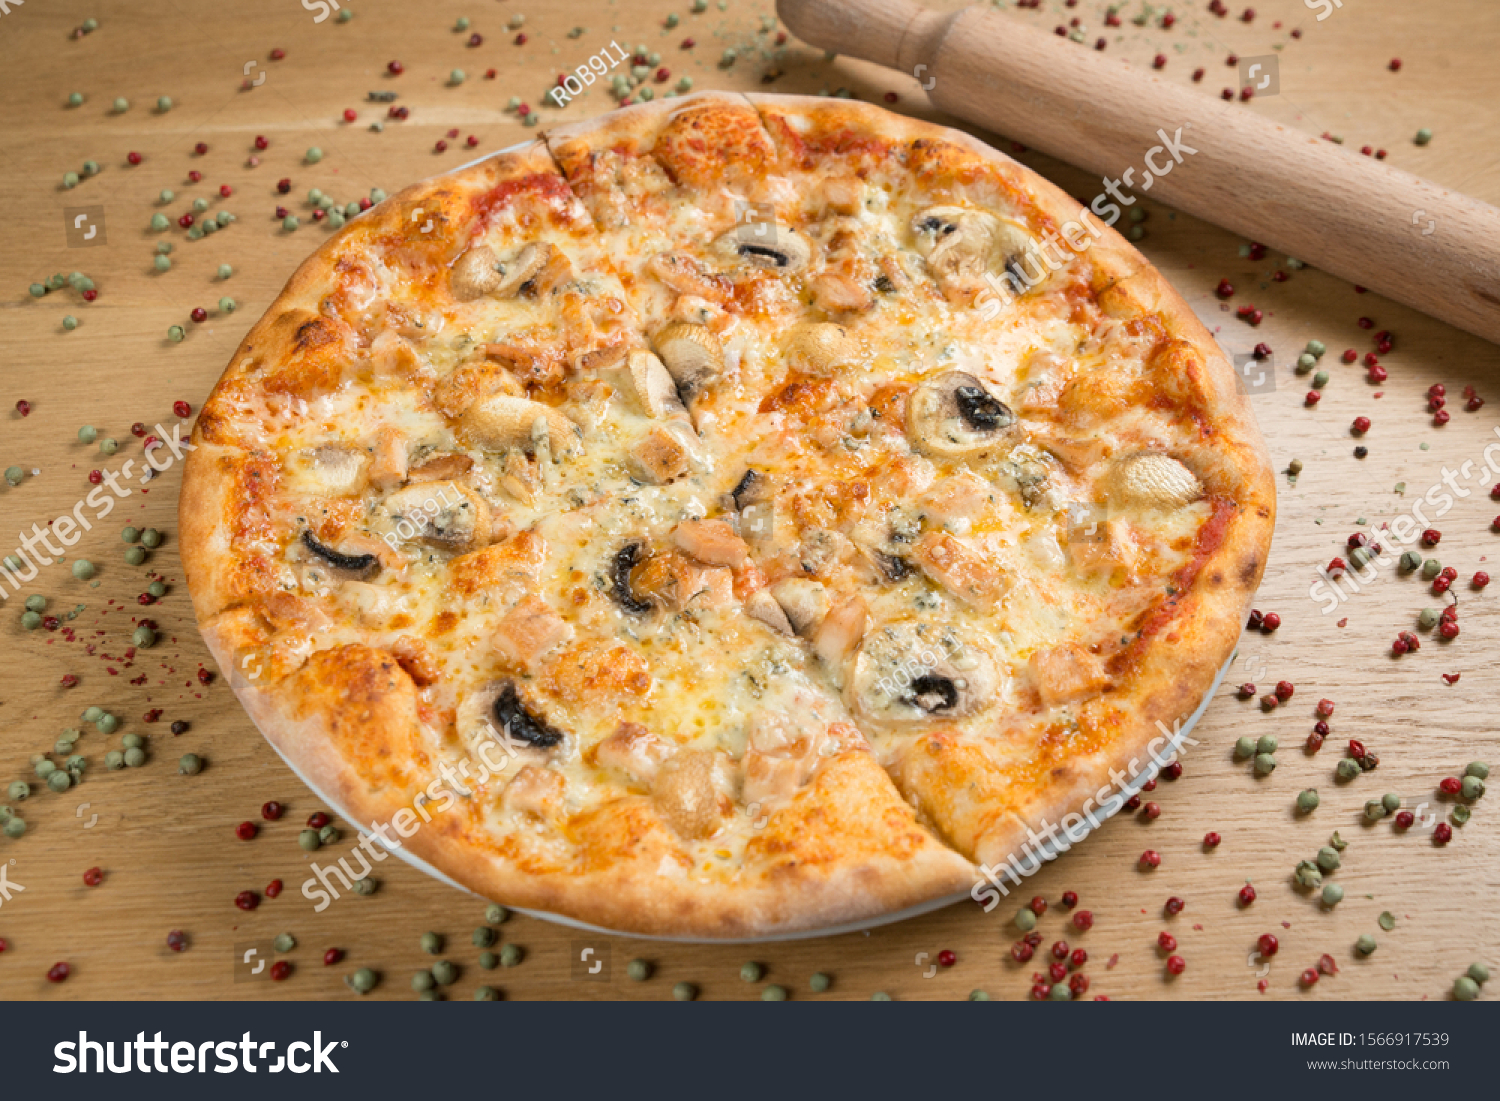 Pollo E Funghi Pizza On Stock Photo 1566917539 | Shutterstock